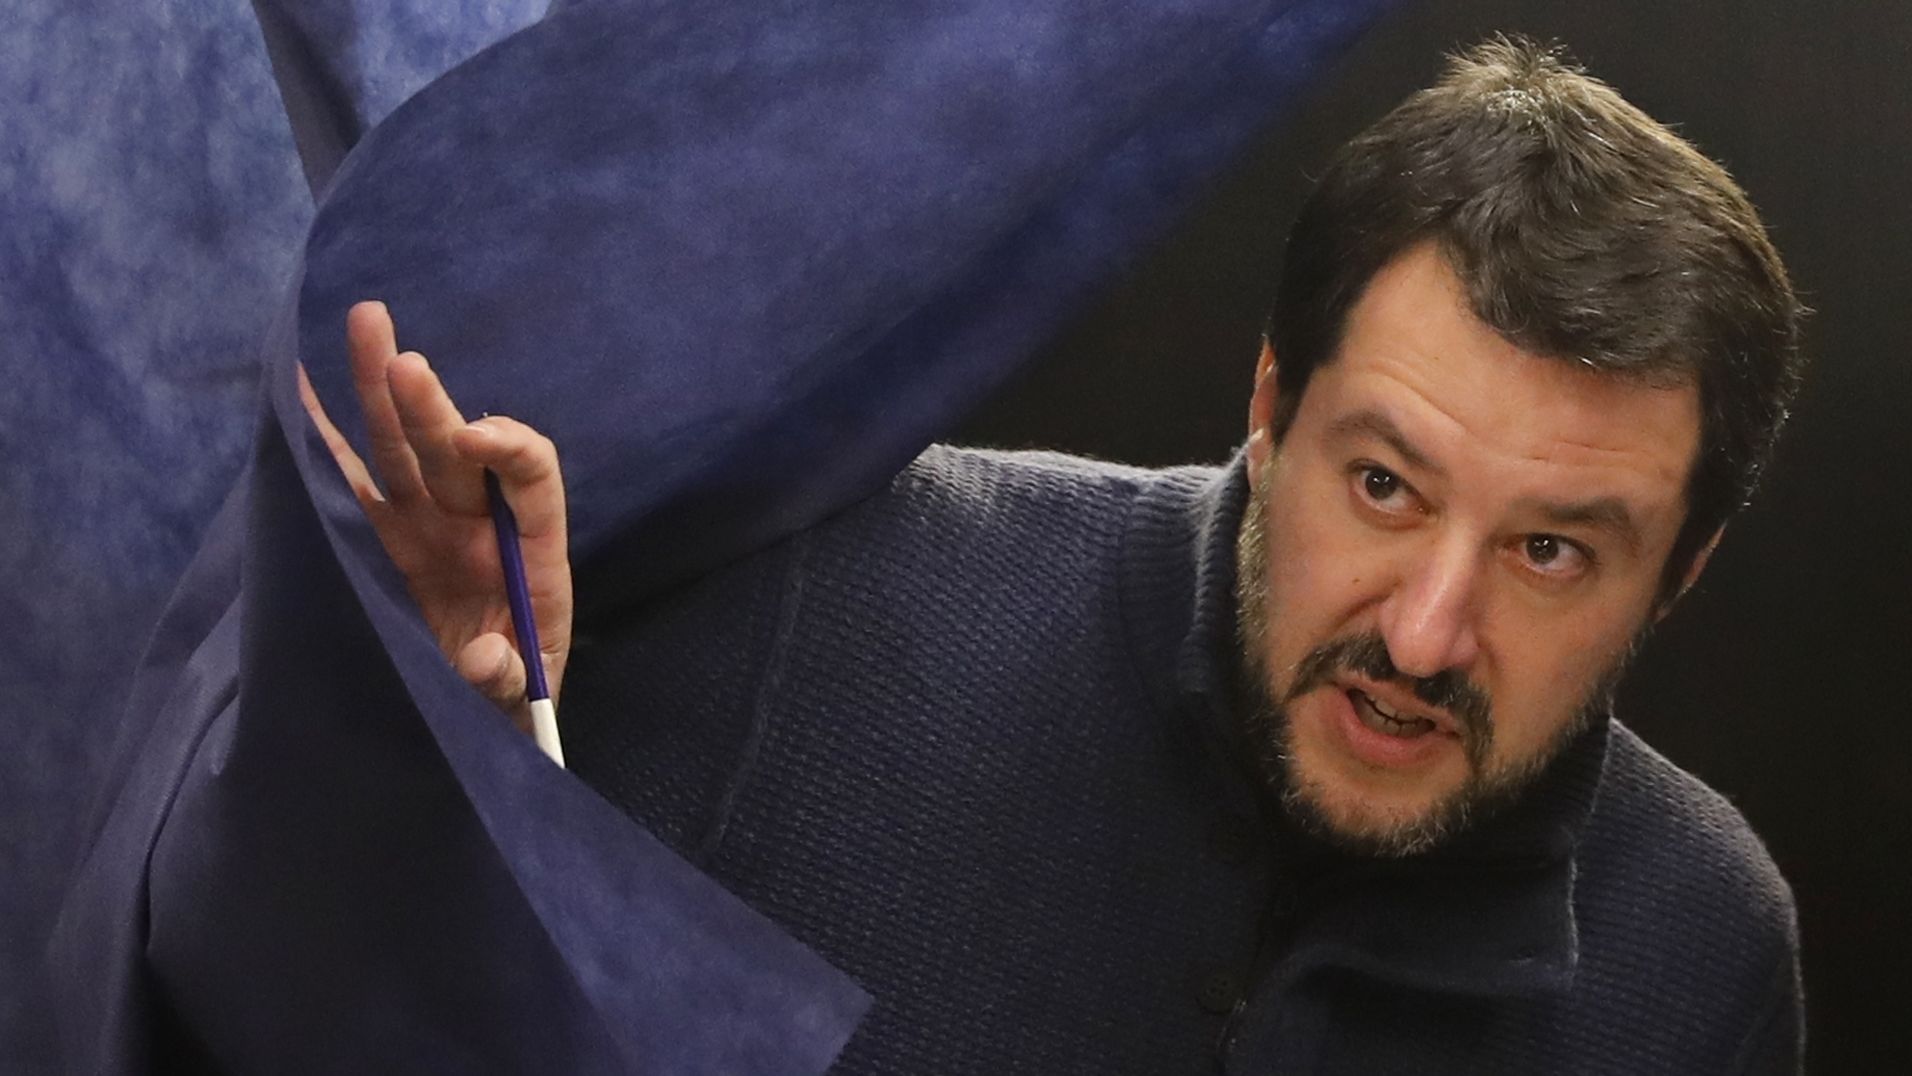 Matteo Salvini's League party rode the wave of anti-establishment sentiment.